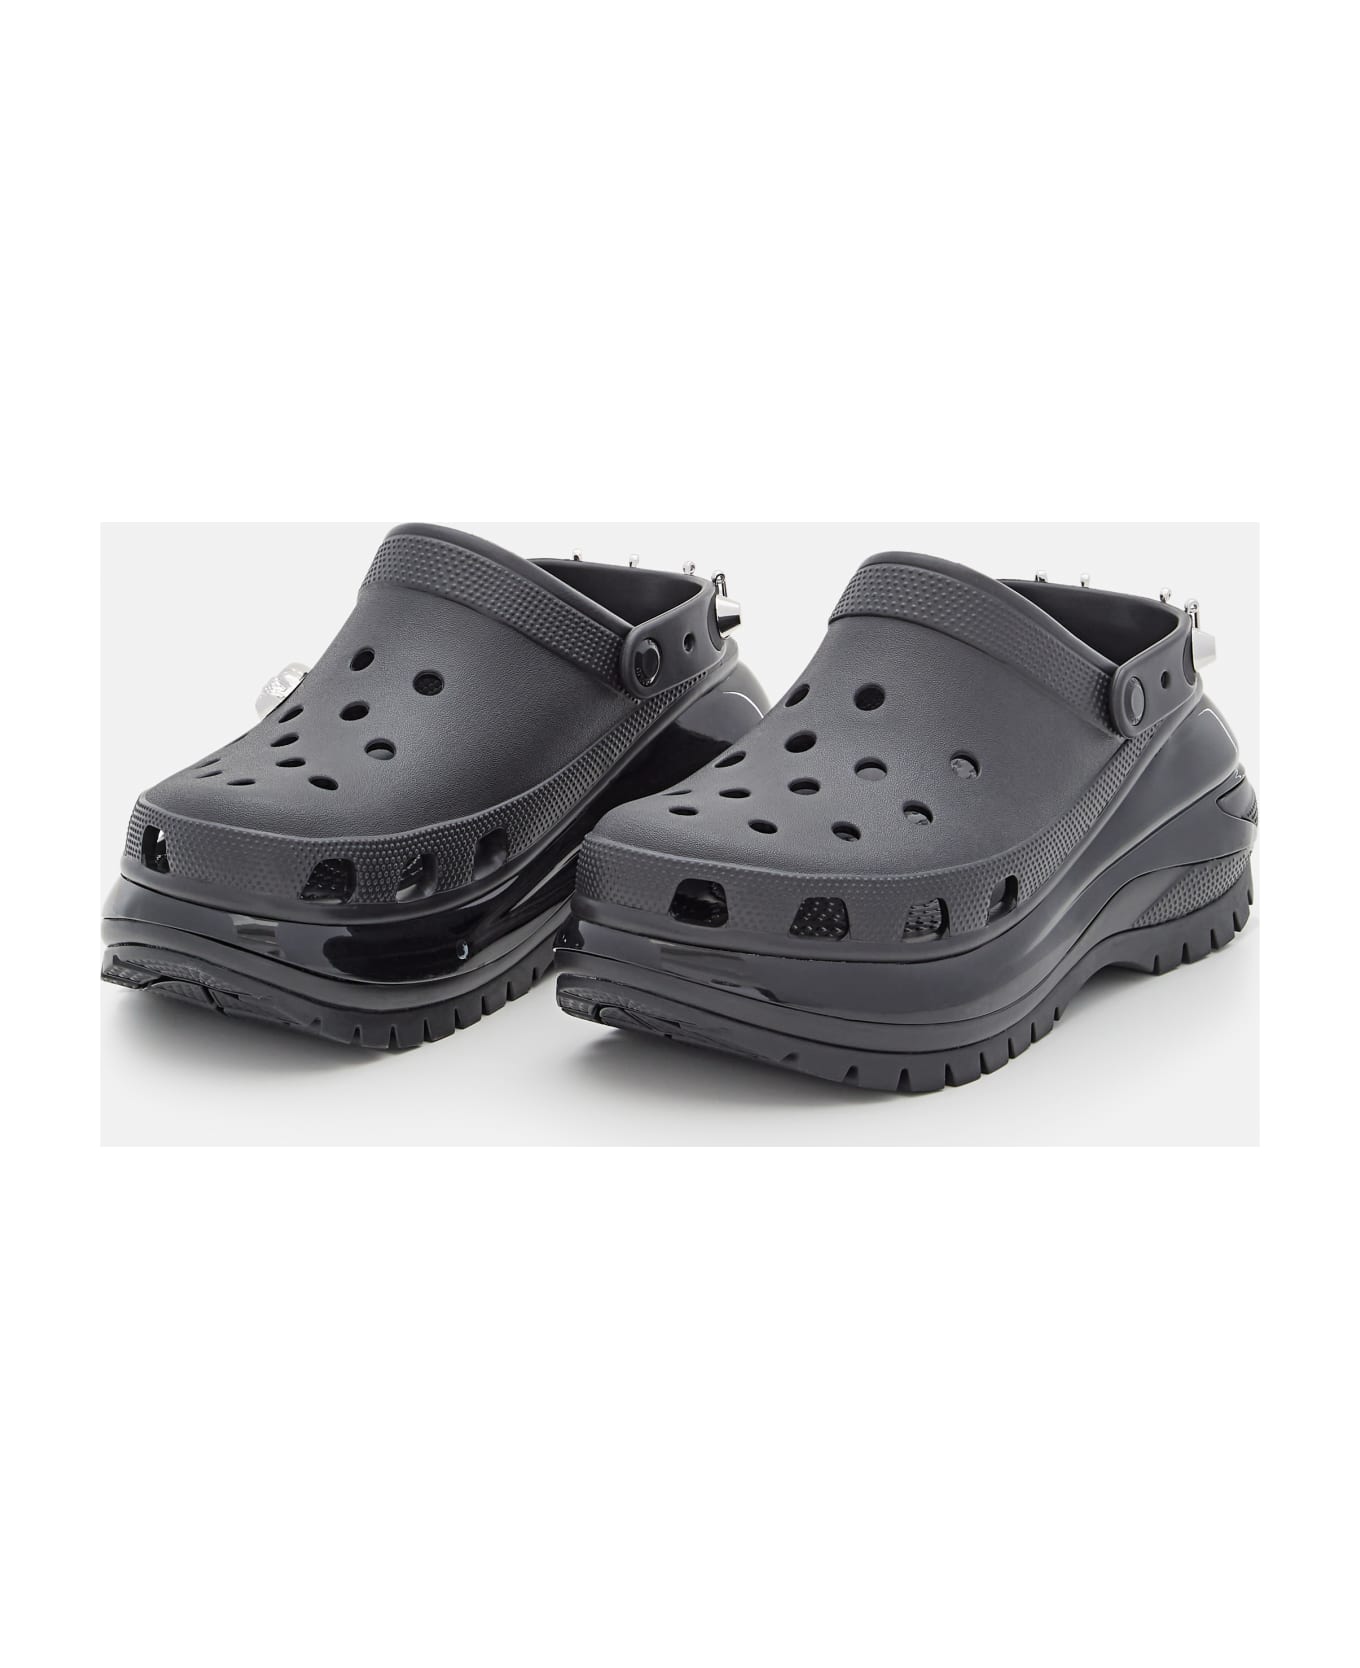 Crocs Classic Mega Crush Rebel Clog Rubber Sandals - Black